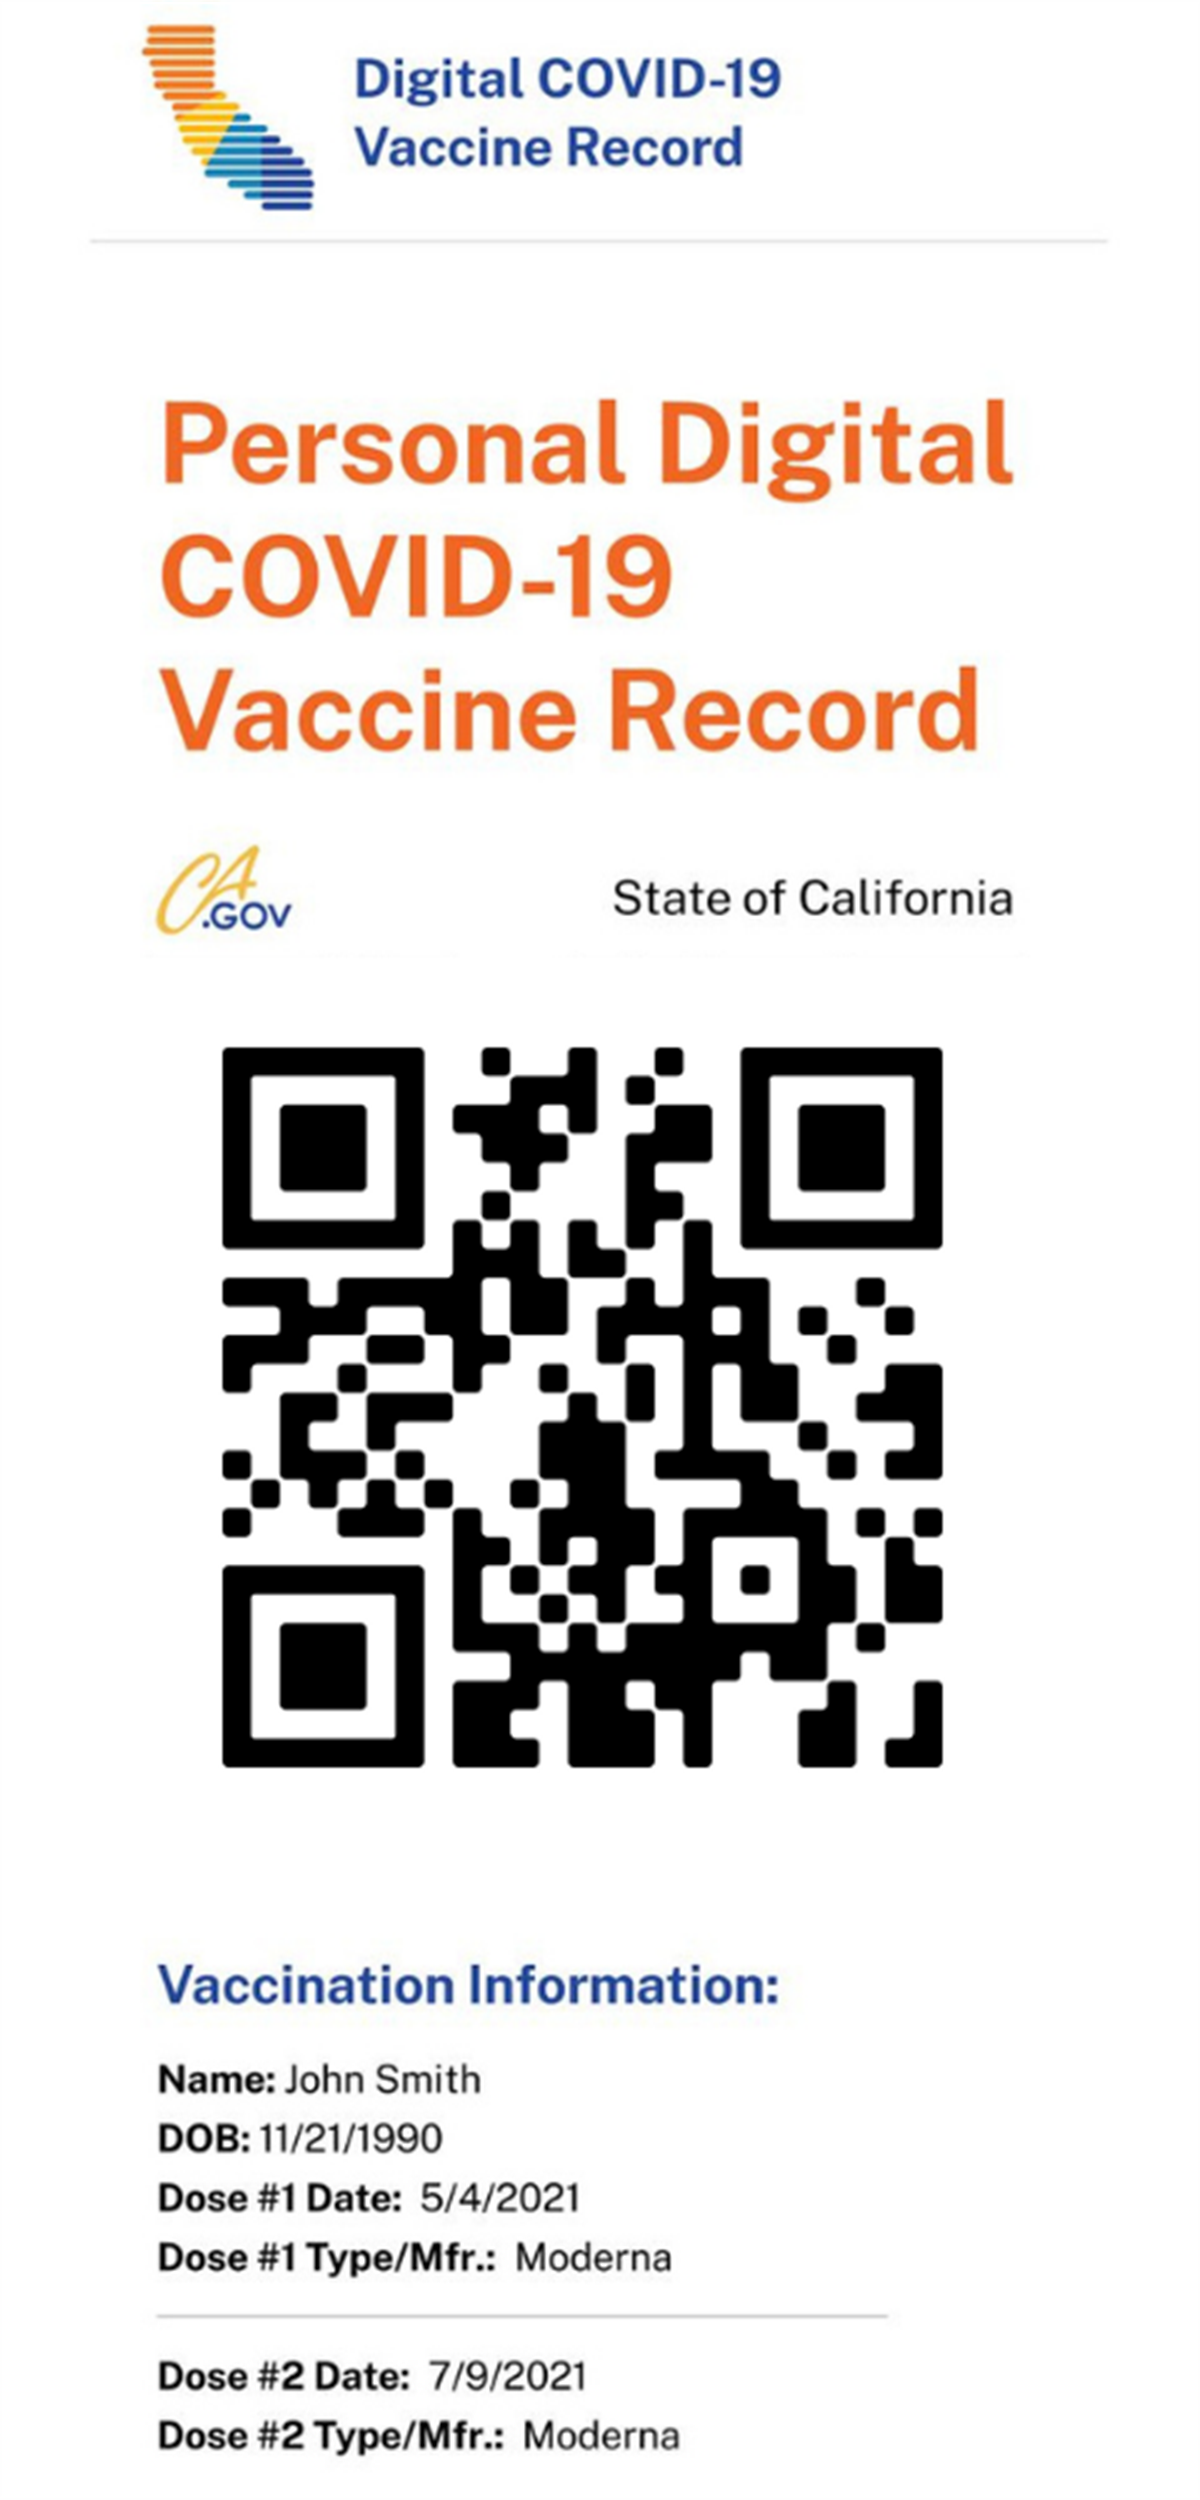 Digital COVID-19 Vaccine Record